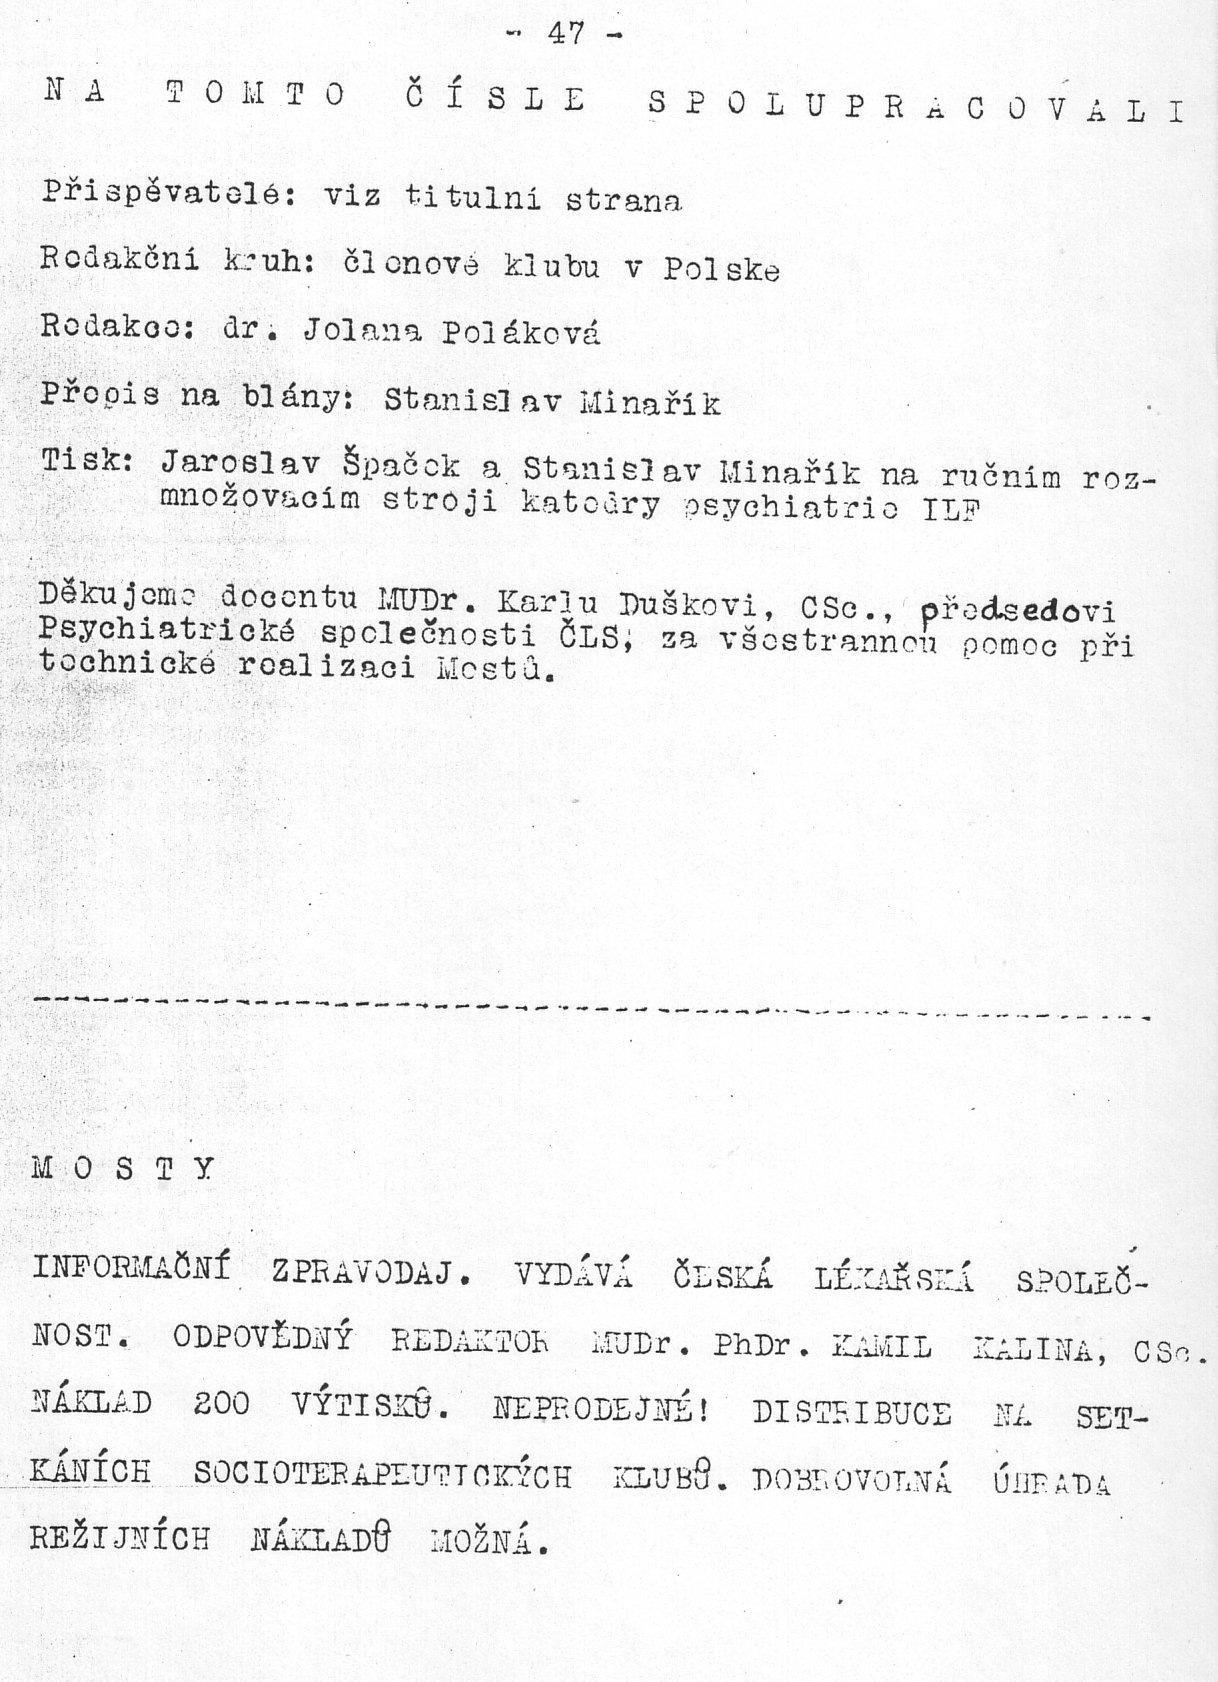 SOS! - strana 47 (asopis Mosty 1989/2)